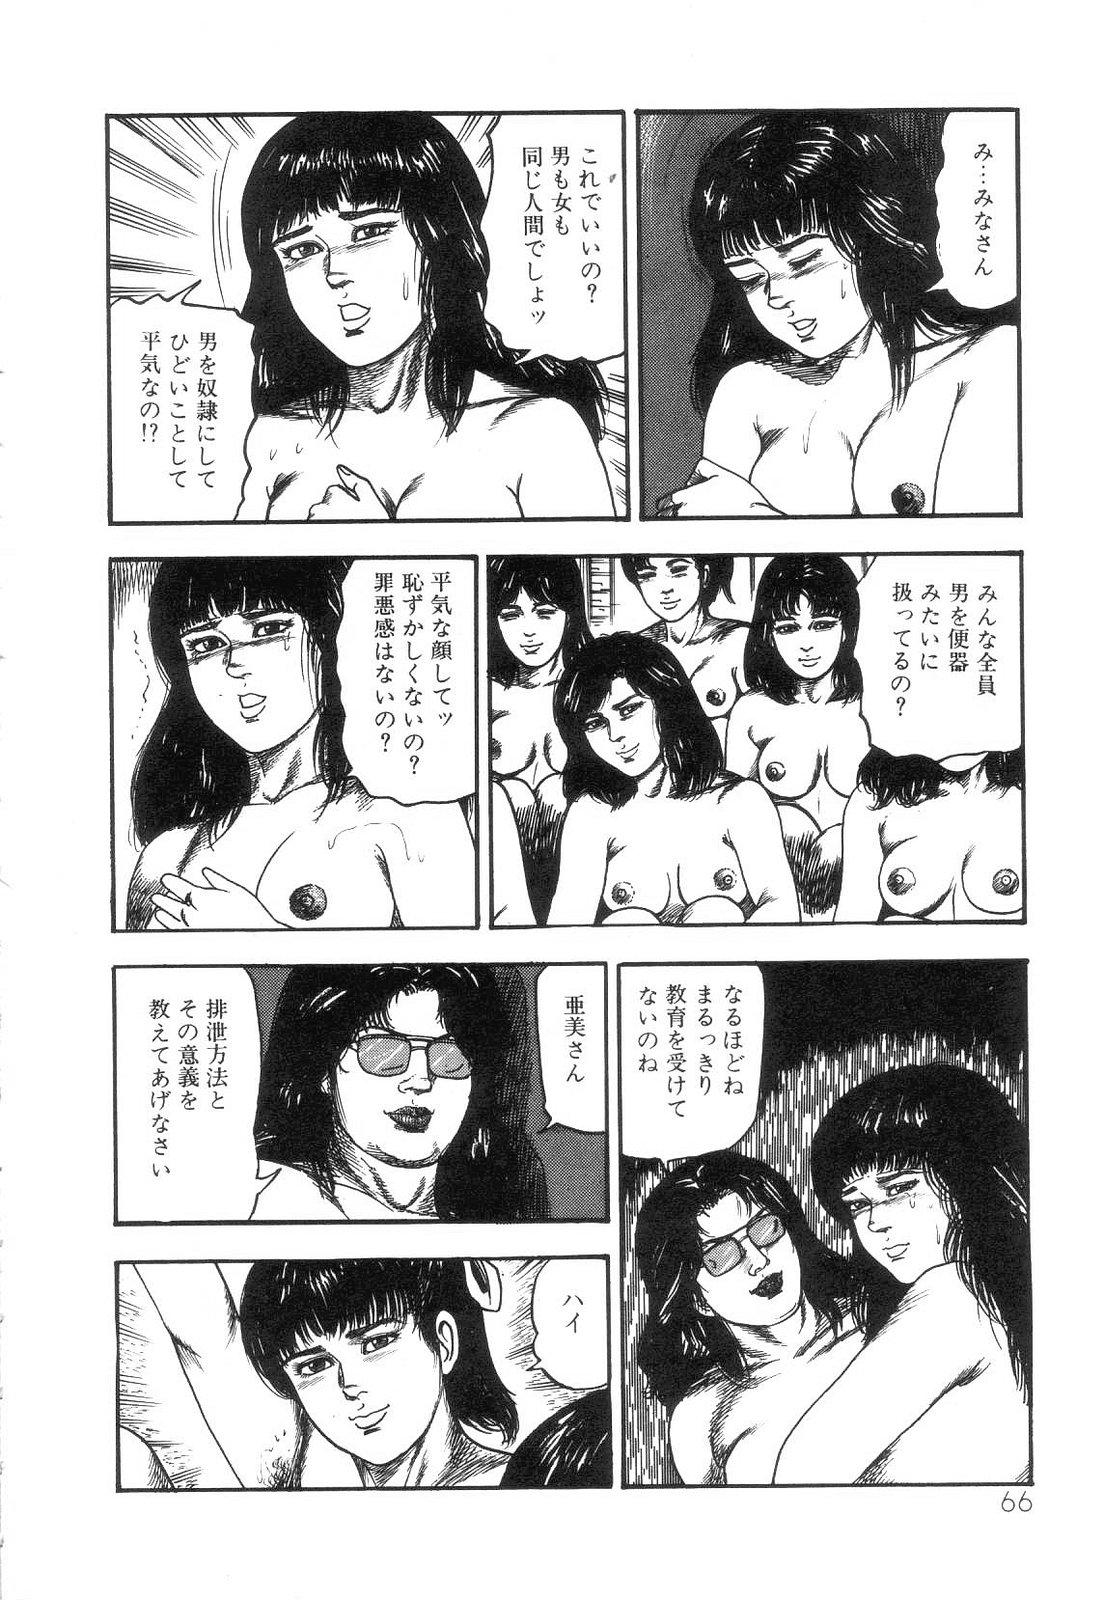 Shiro no Mokushiroku Vol. 4 - Bichiku Karen no Shou 67